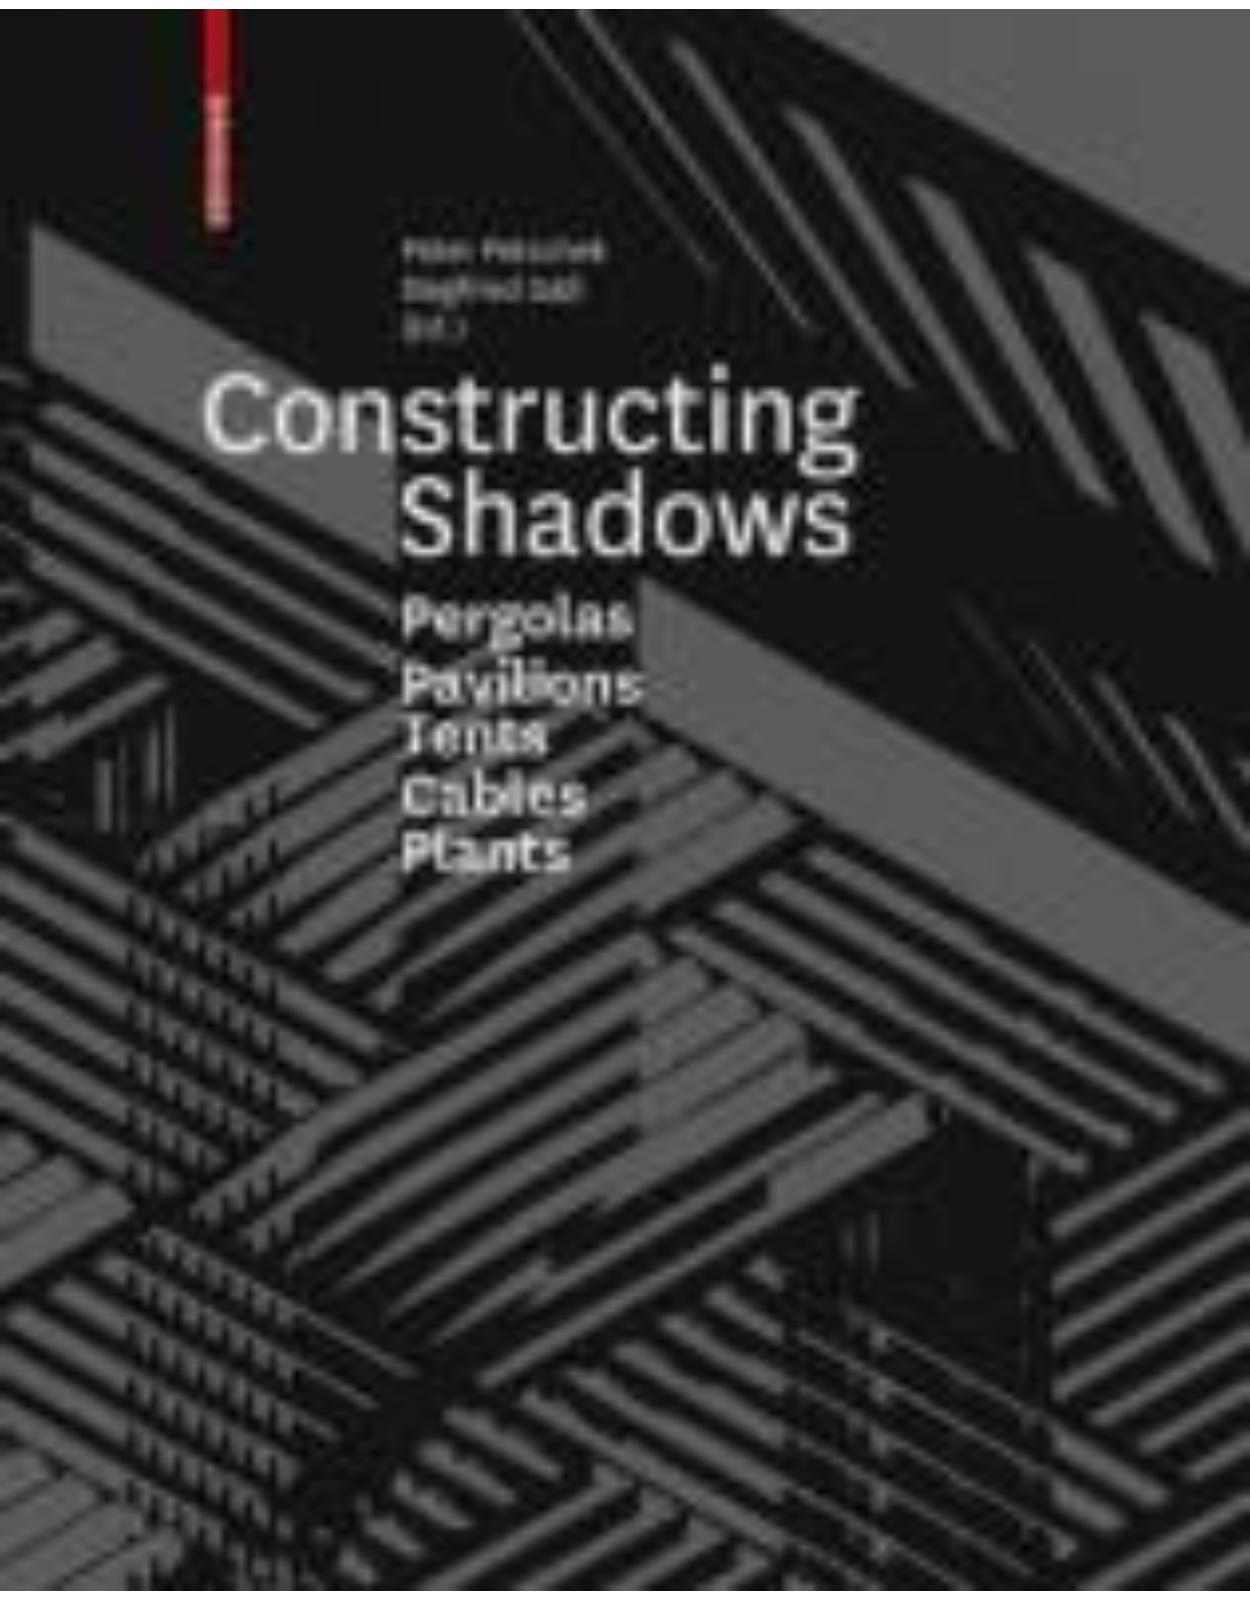 Constructing Shadows: Tents, Pergolas, Cables, Plants